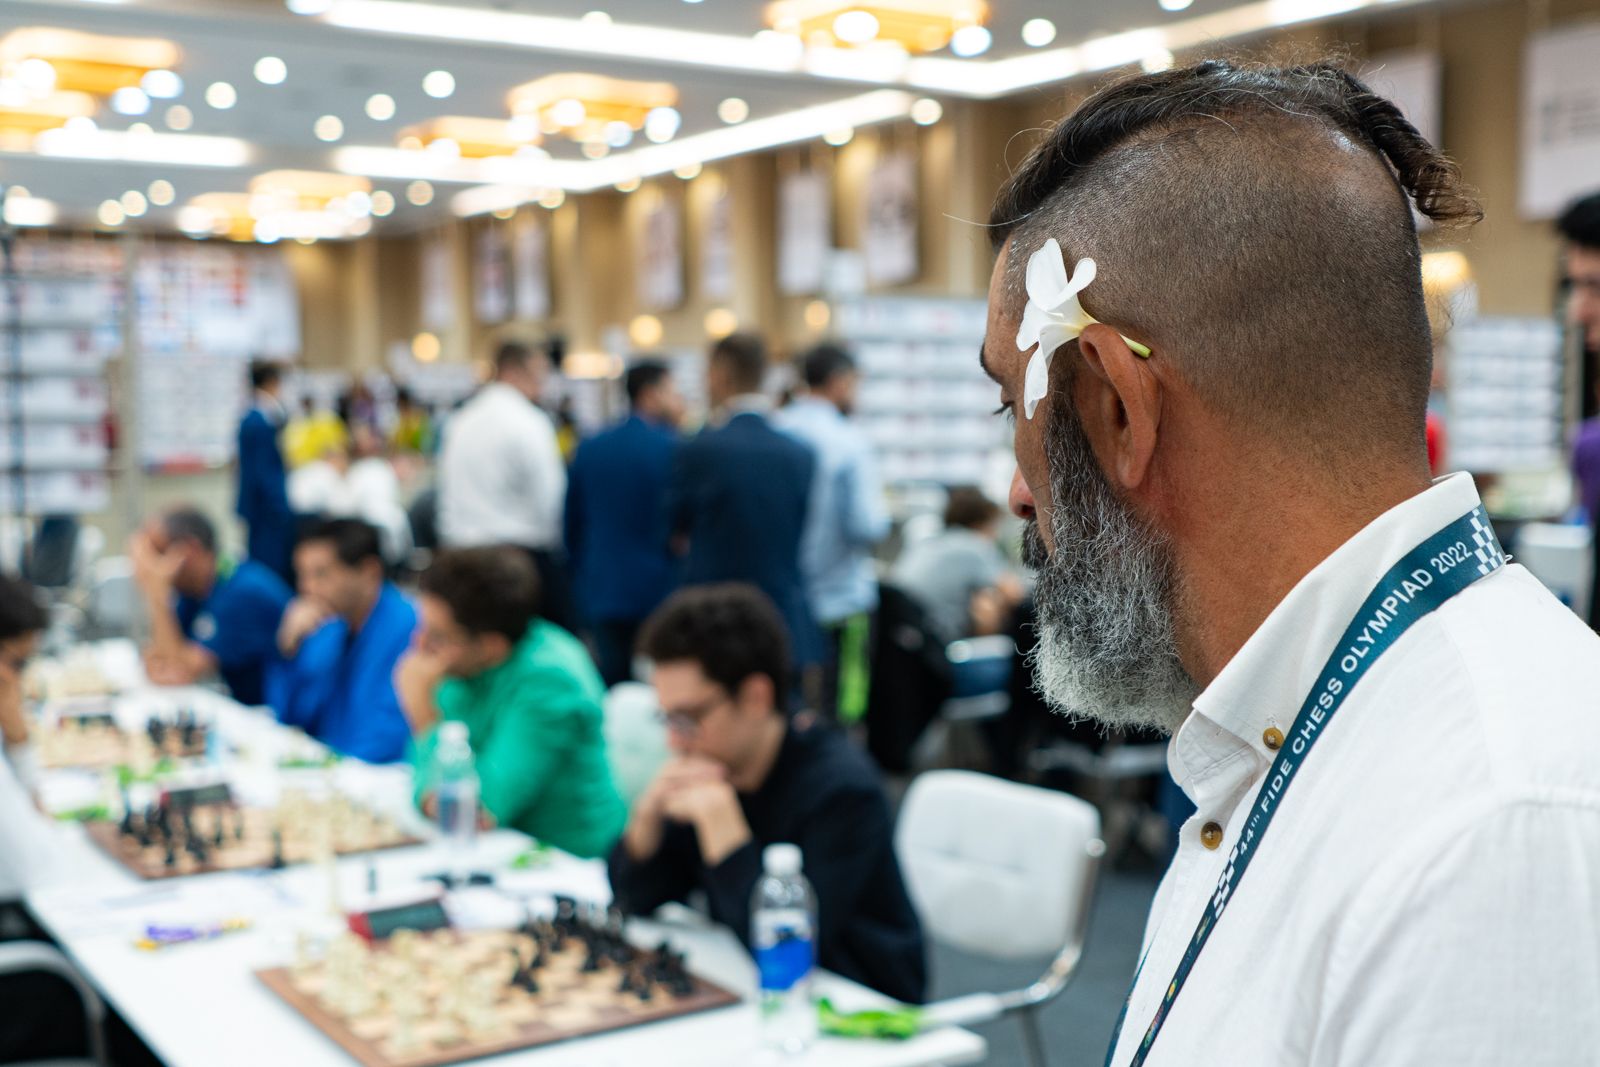 Aqui Acontece - 44ª Olimpíada de Xadrez FIDE